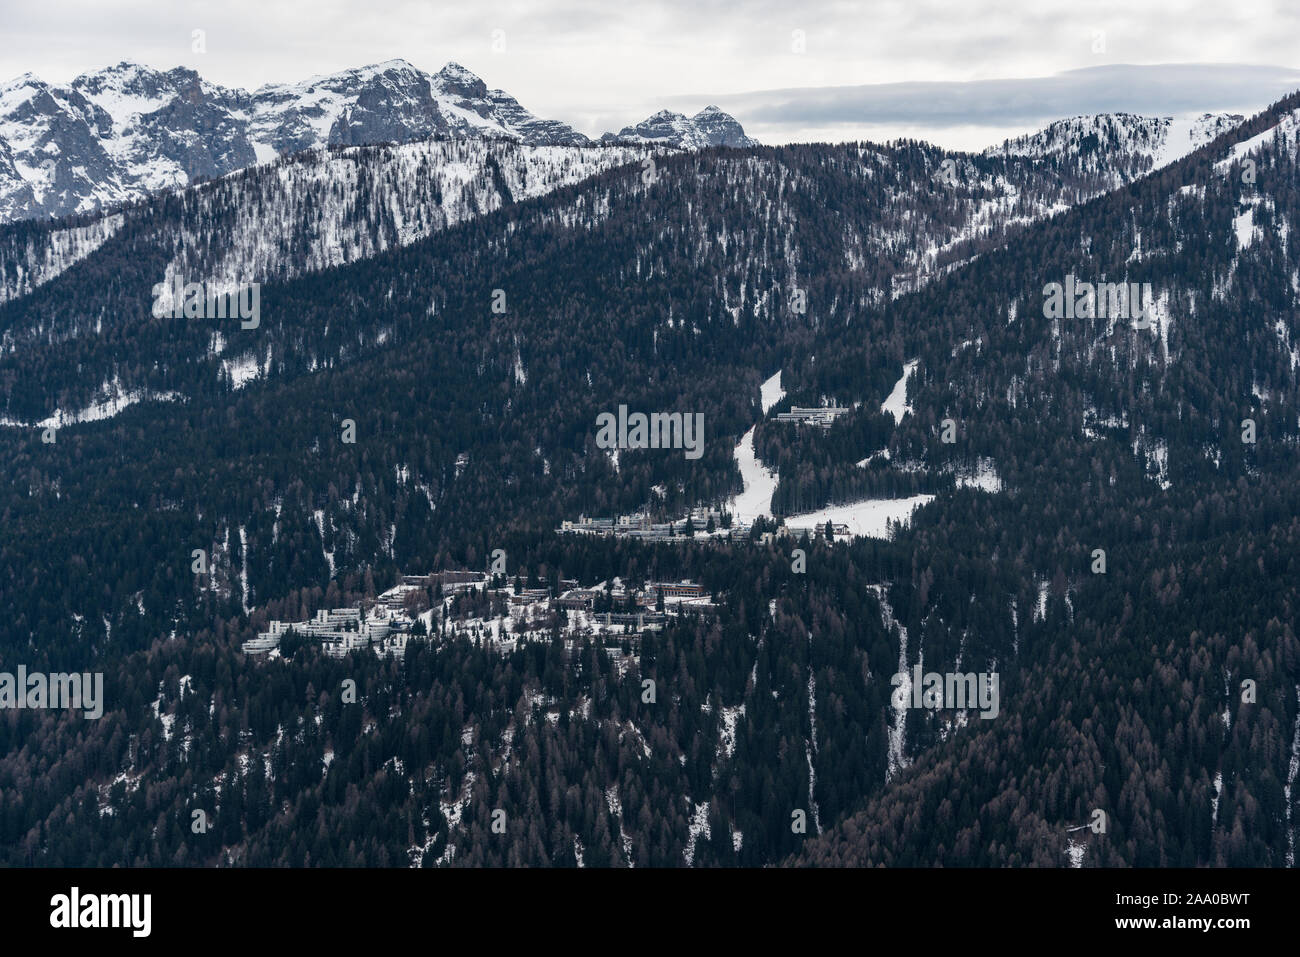 La station de ski Folgarida 1400 avec les hôtels et toutes les infrastructures, situé à Val di Sole, l'un des plus connus des alpes ski area à Trento, Italie Banque D'Images